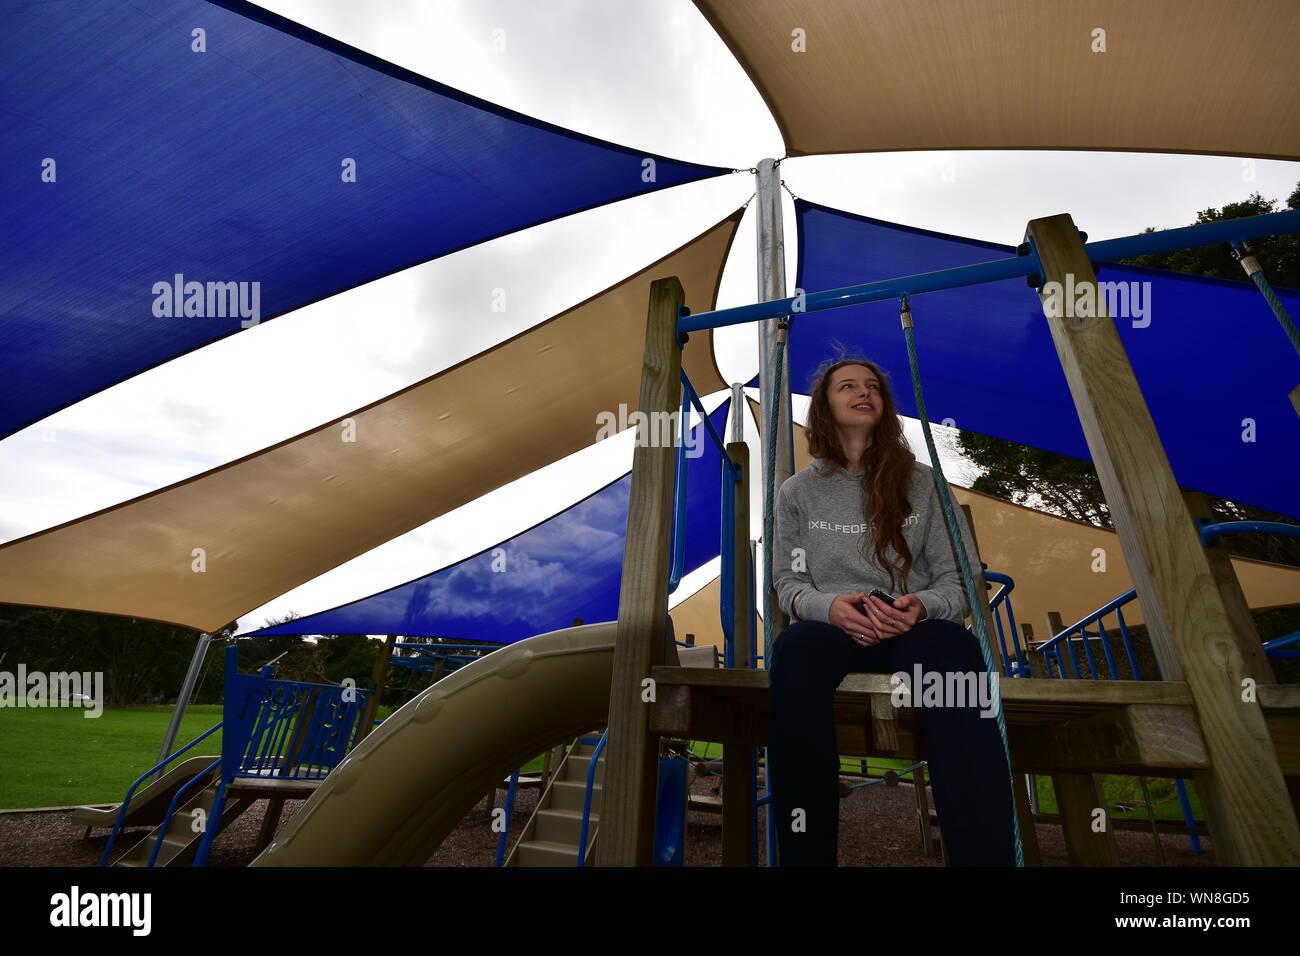 Mädchen mit langem Haar sitzt in der Nähe der Rutschbahn unter Schatten Segel an bewölkten Tag. Stockfoto